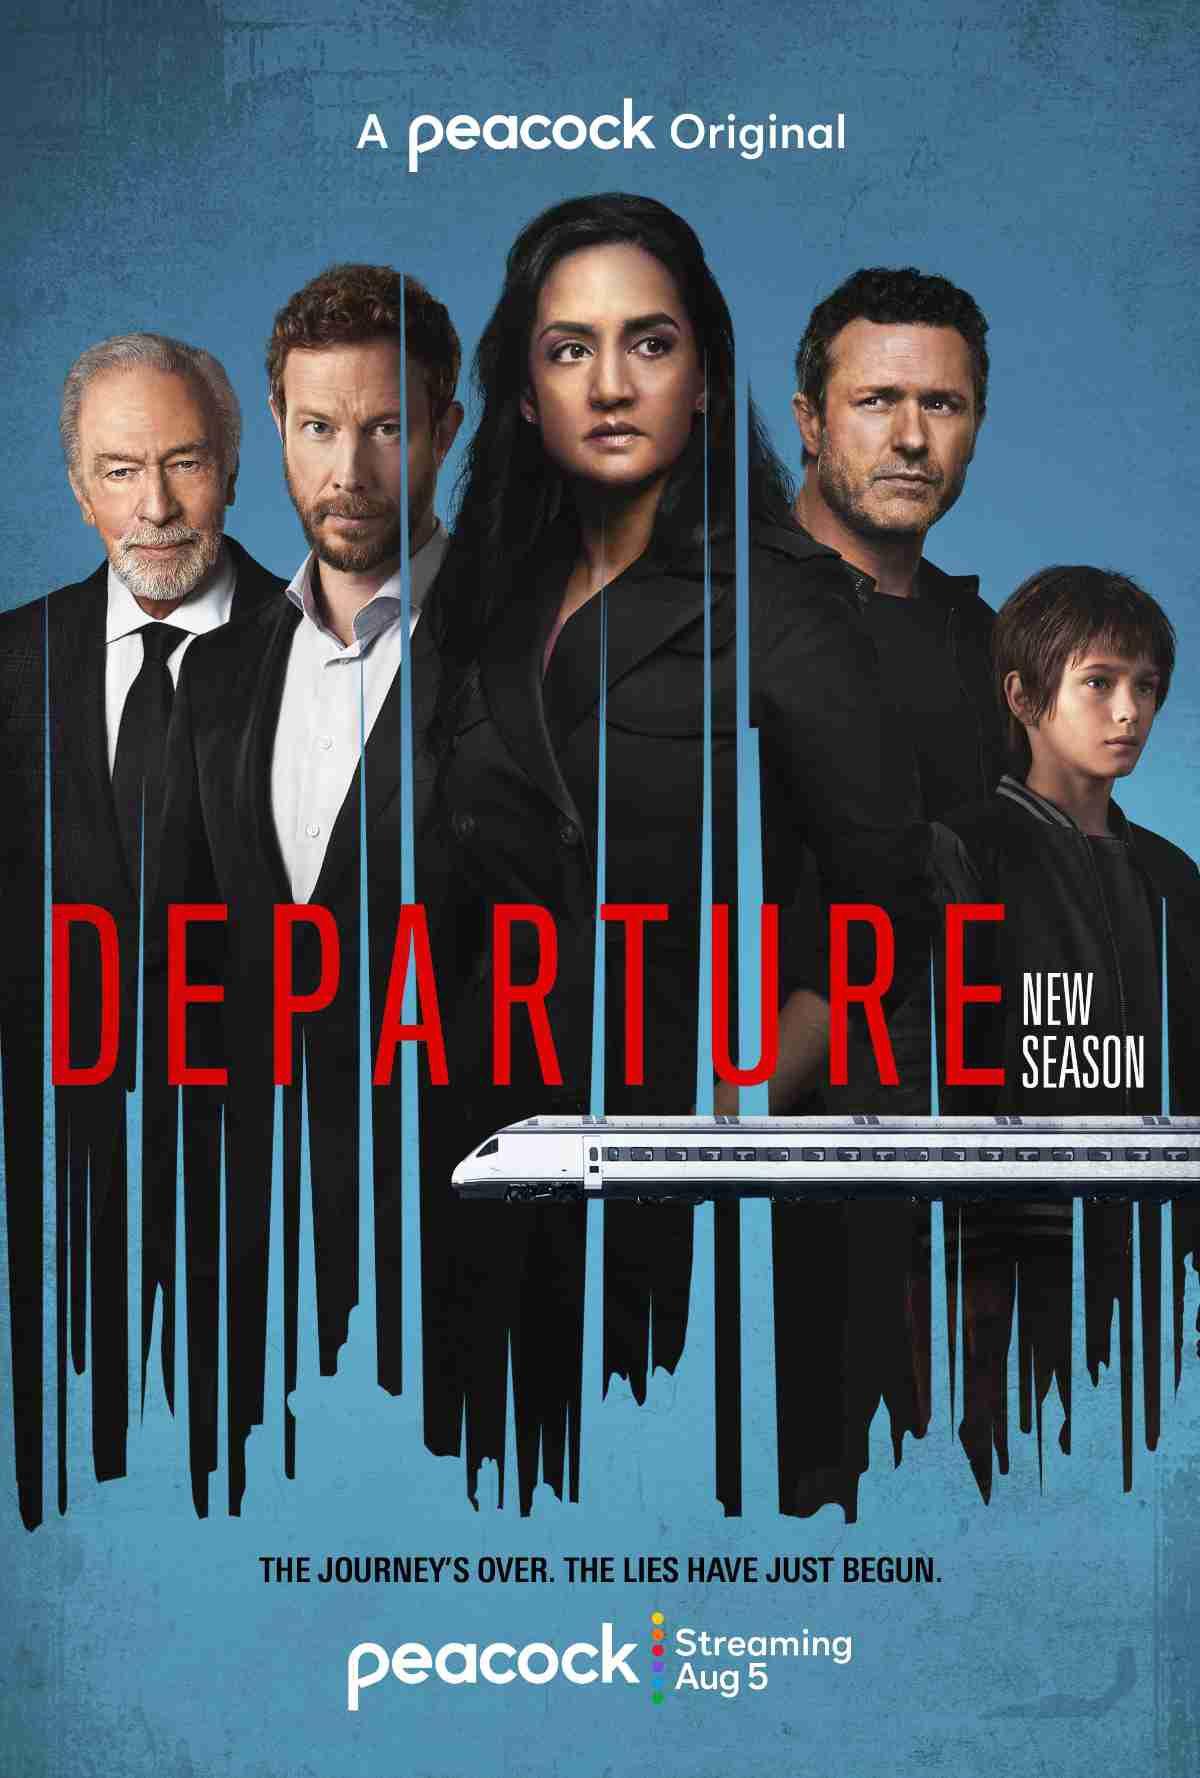 Постер фильма Отправление | Departure